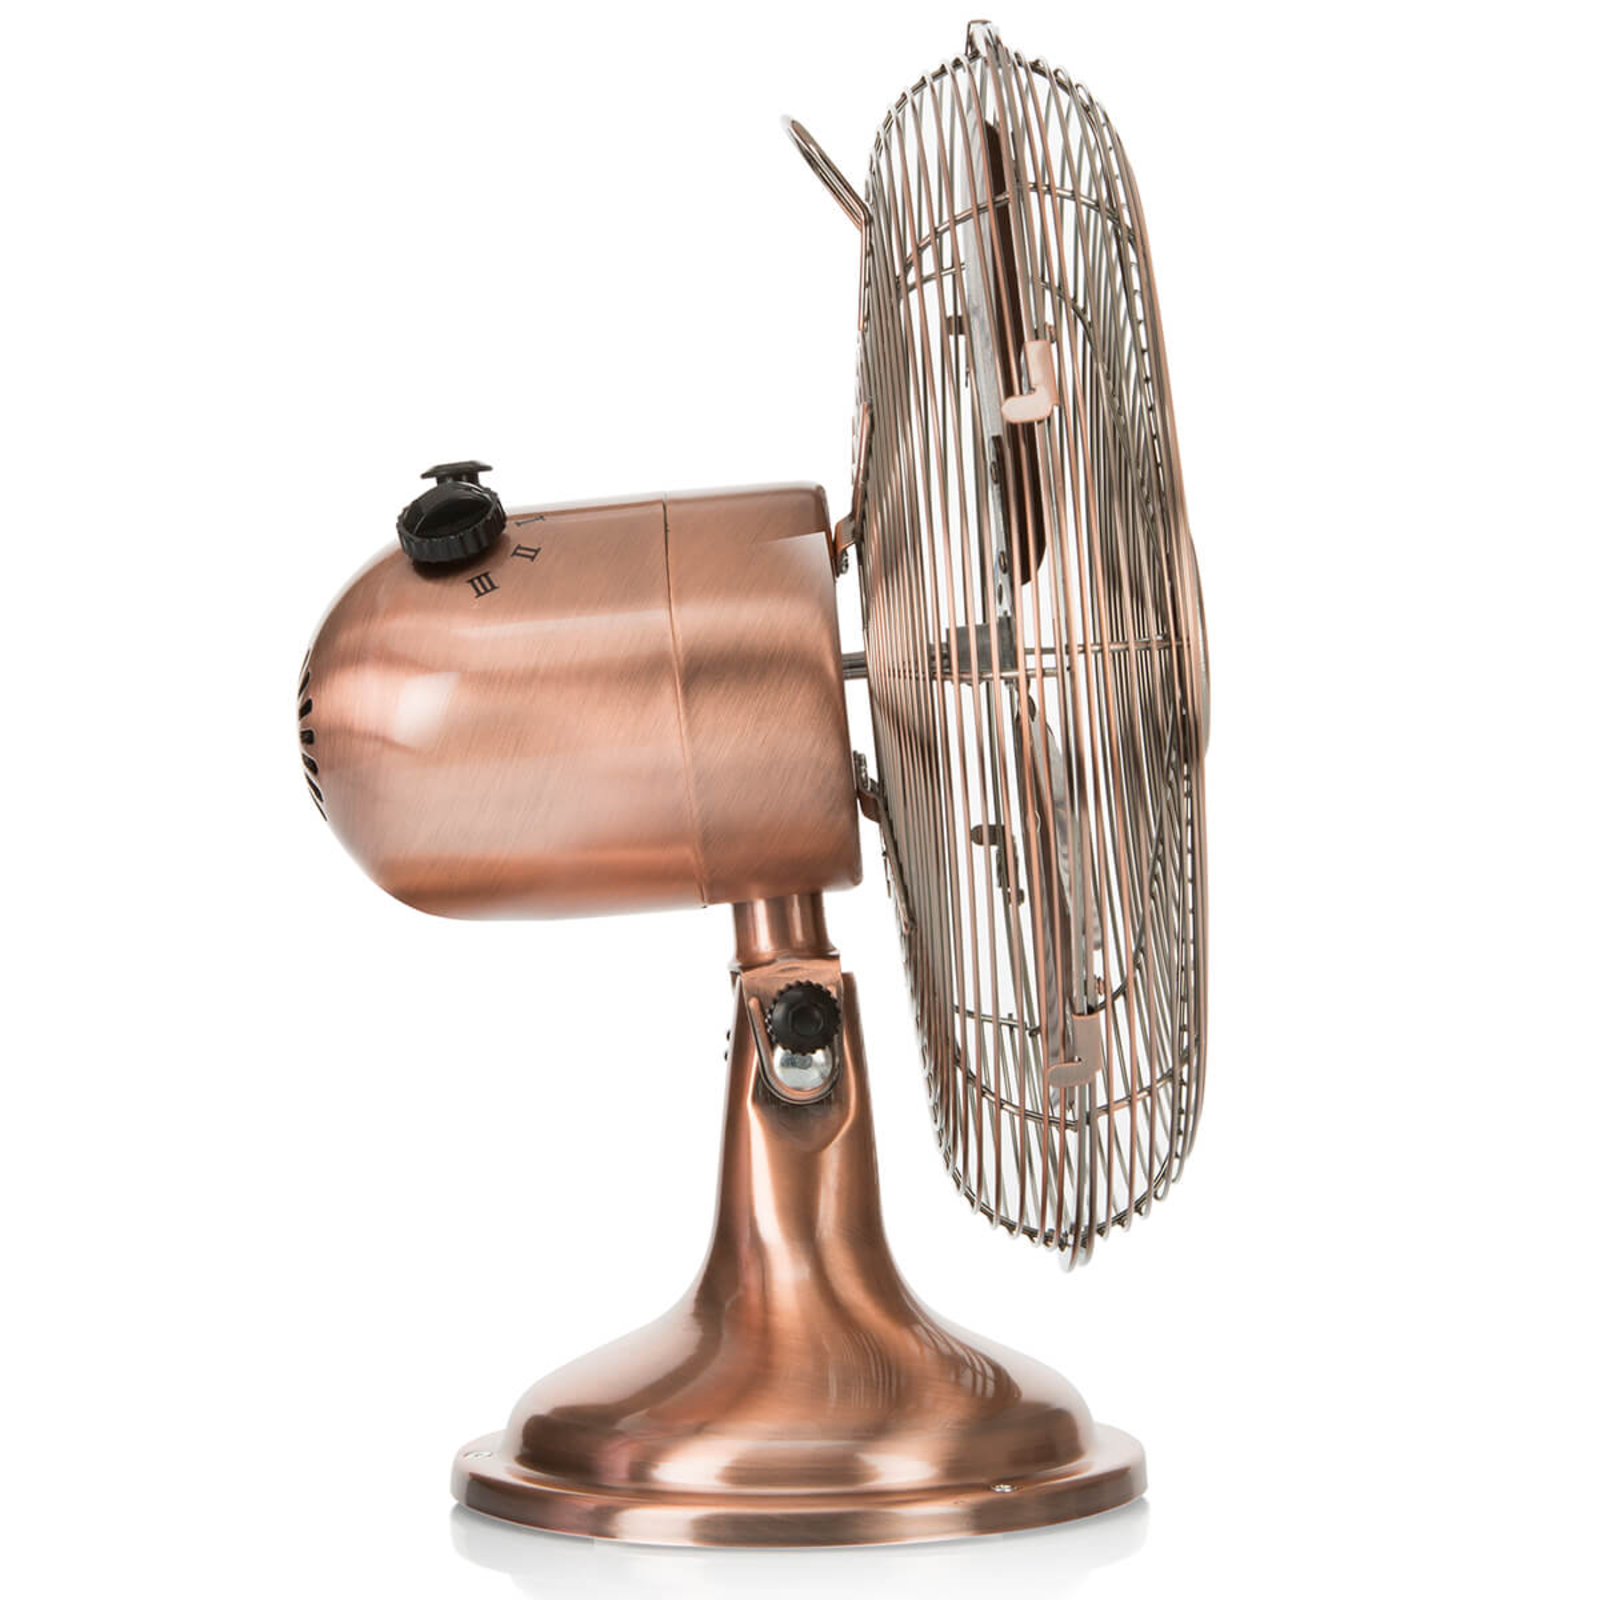 Glossy copper VE5970 table fan